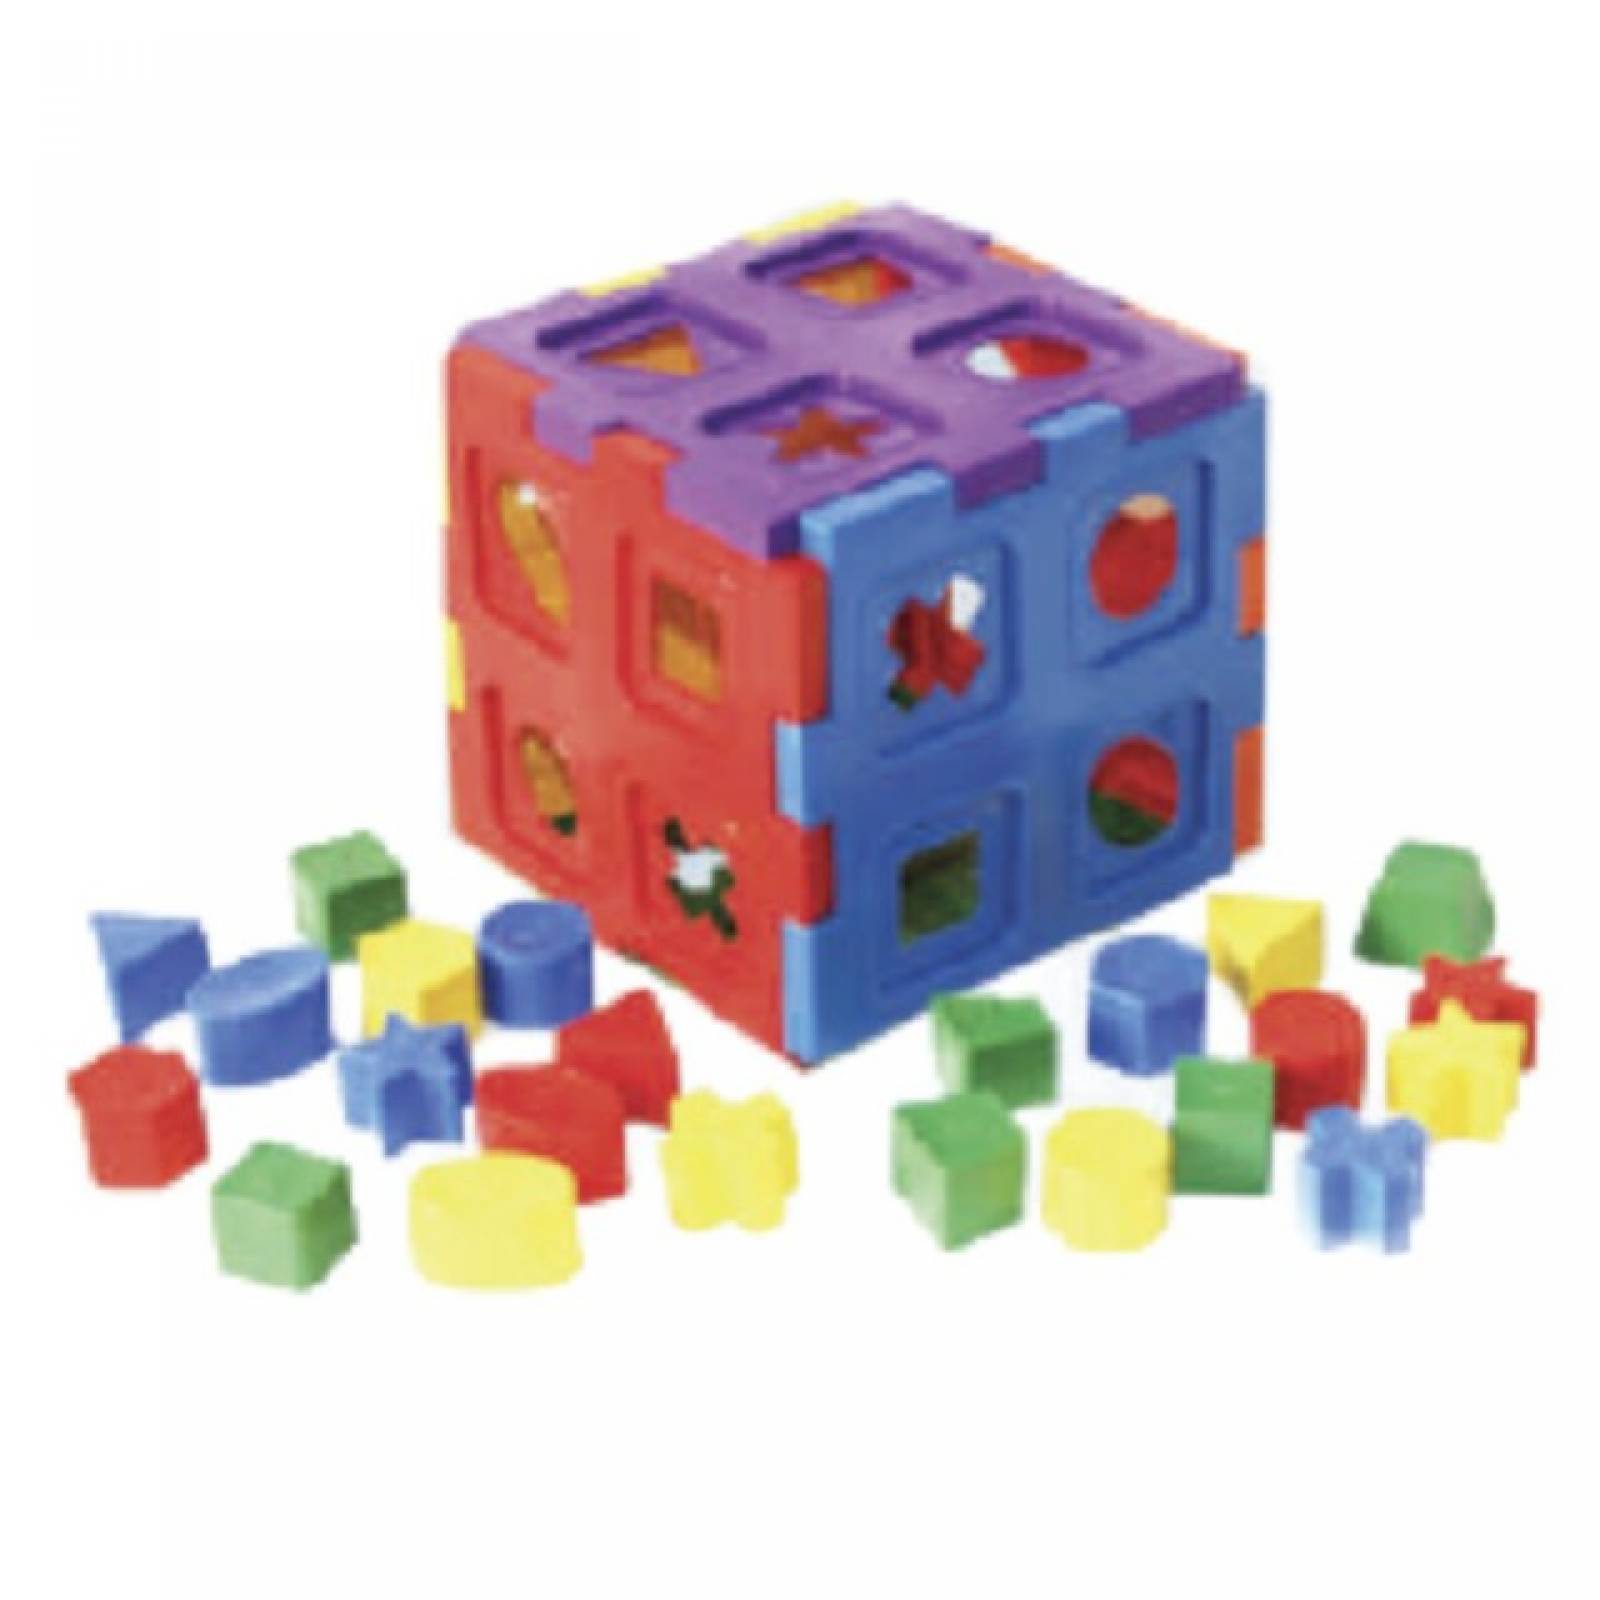 Cubo Gigante 30 piezas juguete didÃ¡citco de la linea ConstrucciÃ³n